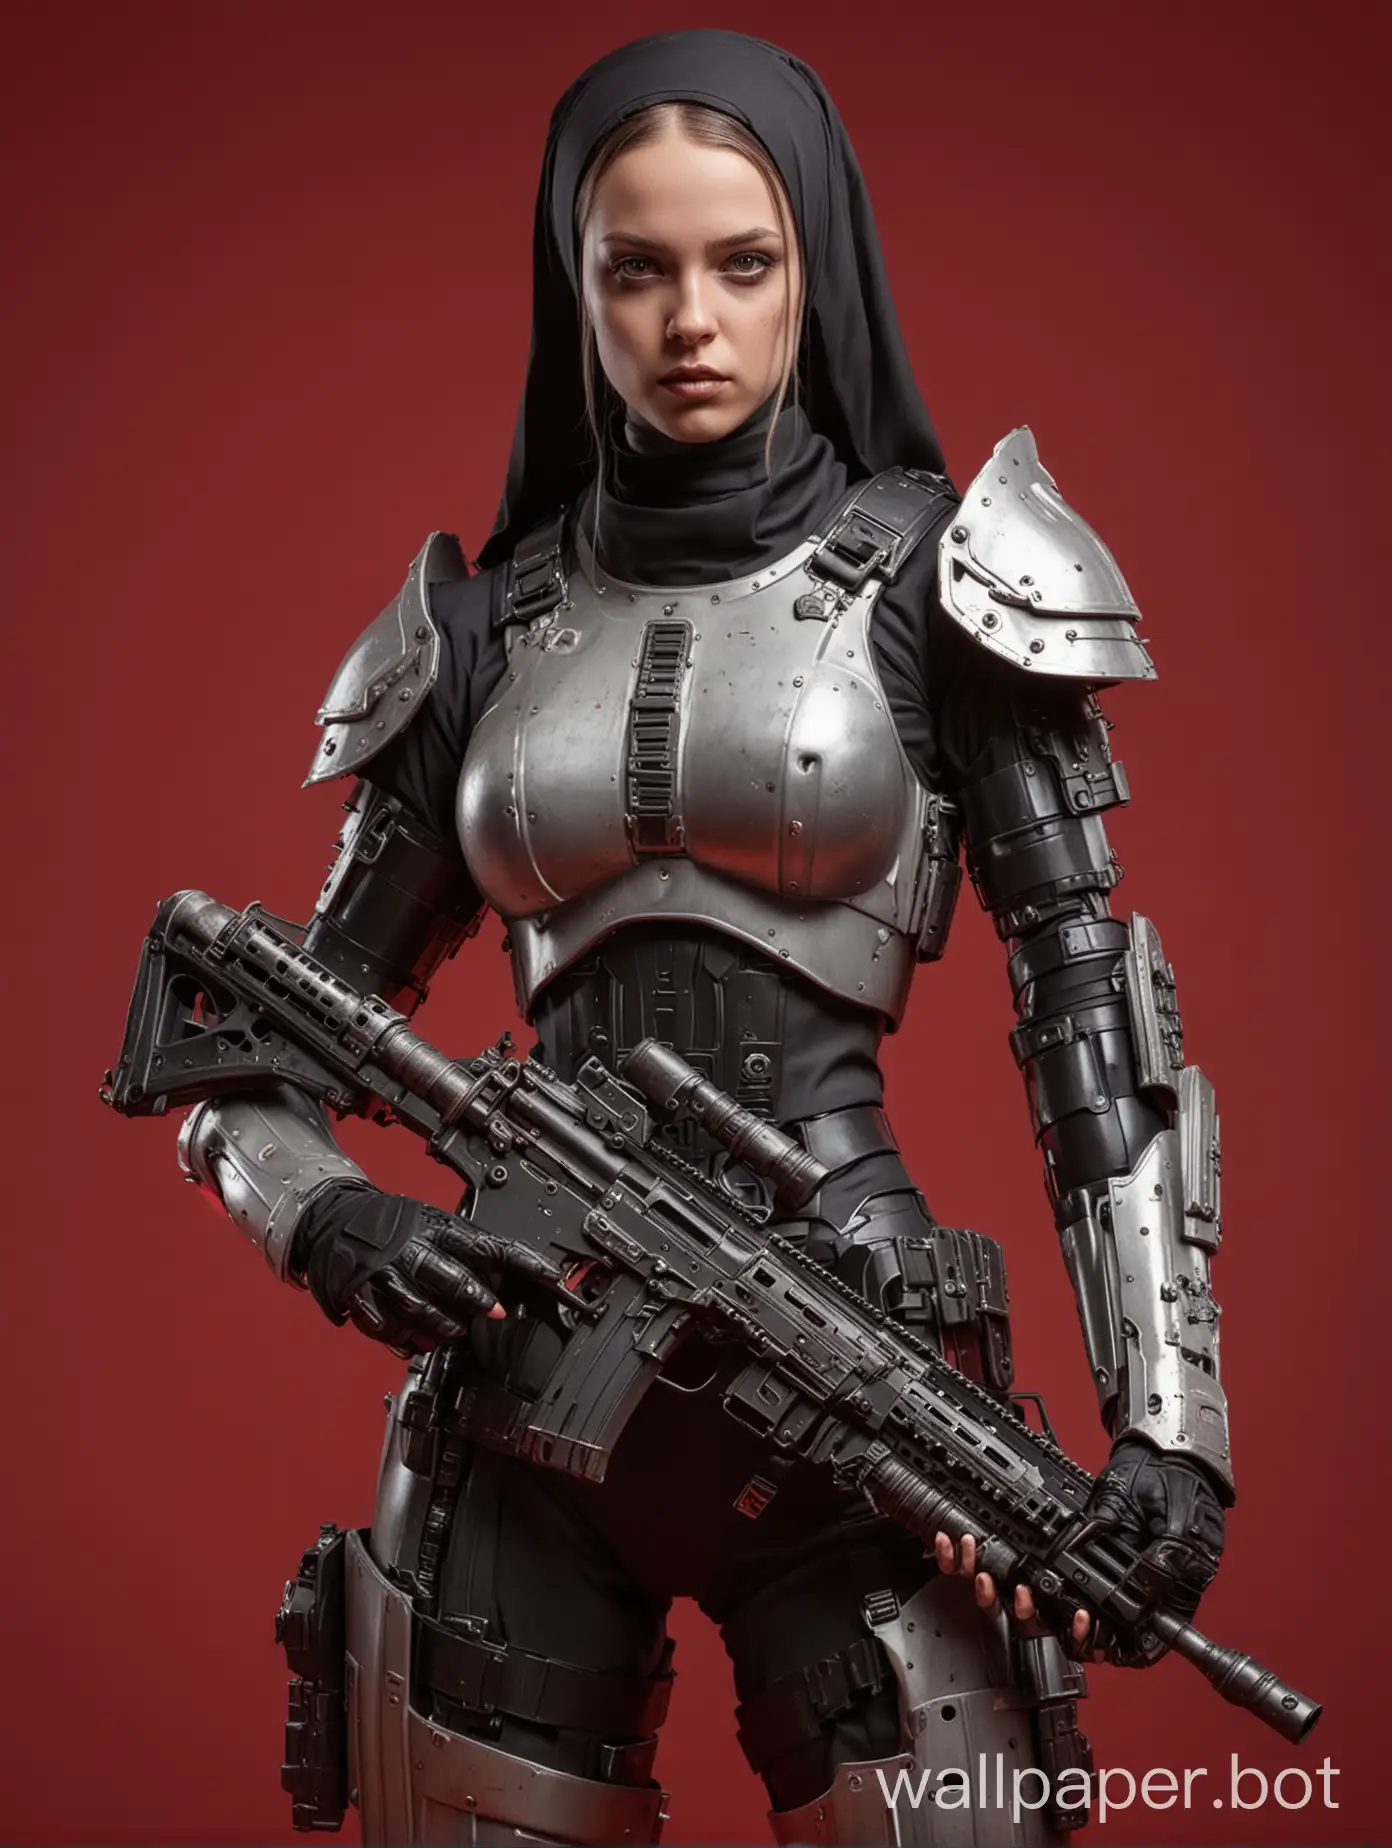 nun girl, heavy armor, full body Cyberarmored mercenary full armor holds submachine gun red background